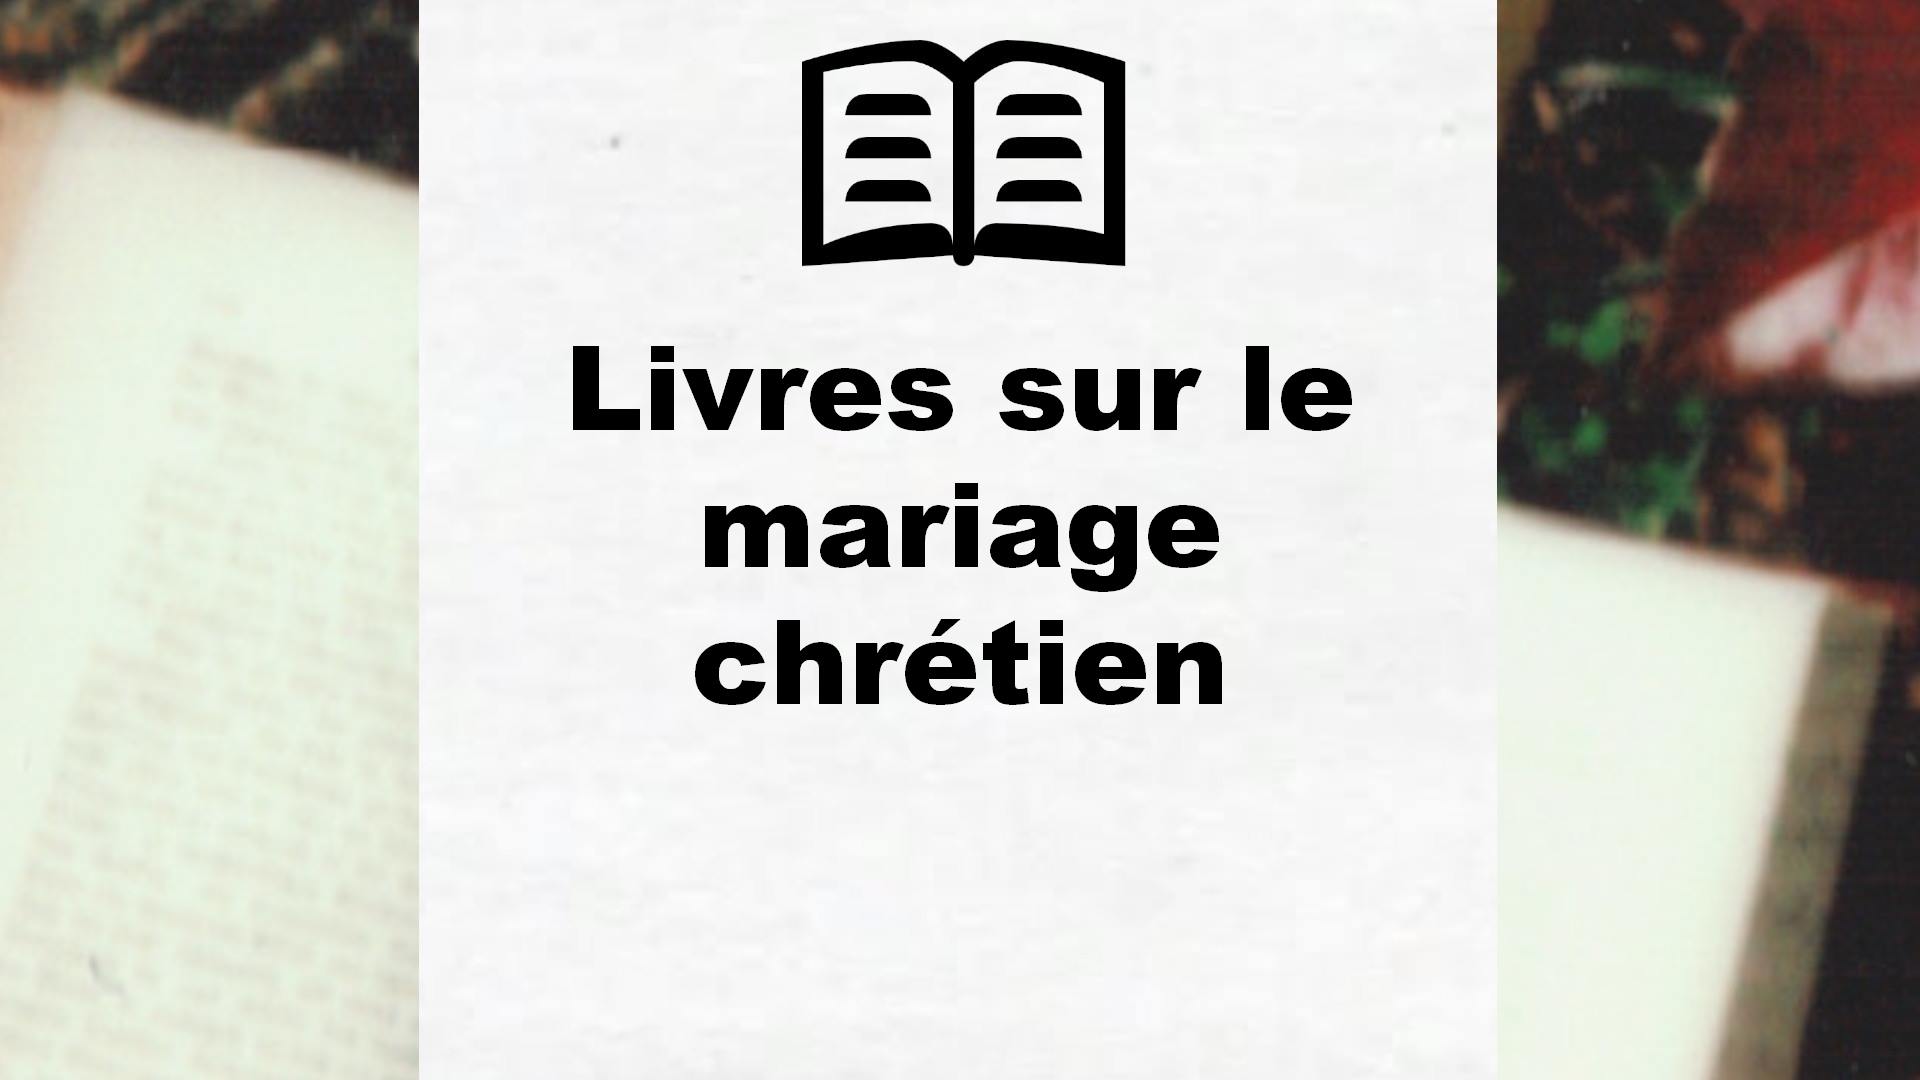 Livres sur le mariage chrétien